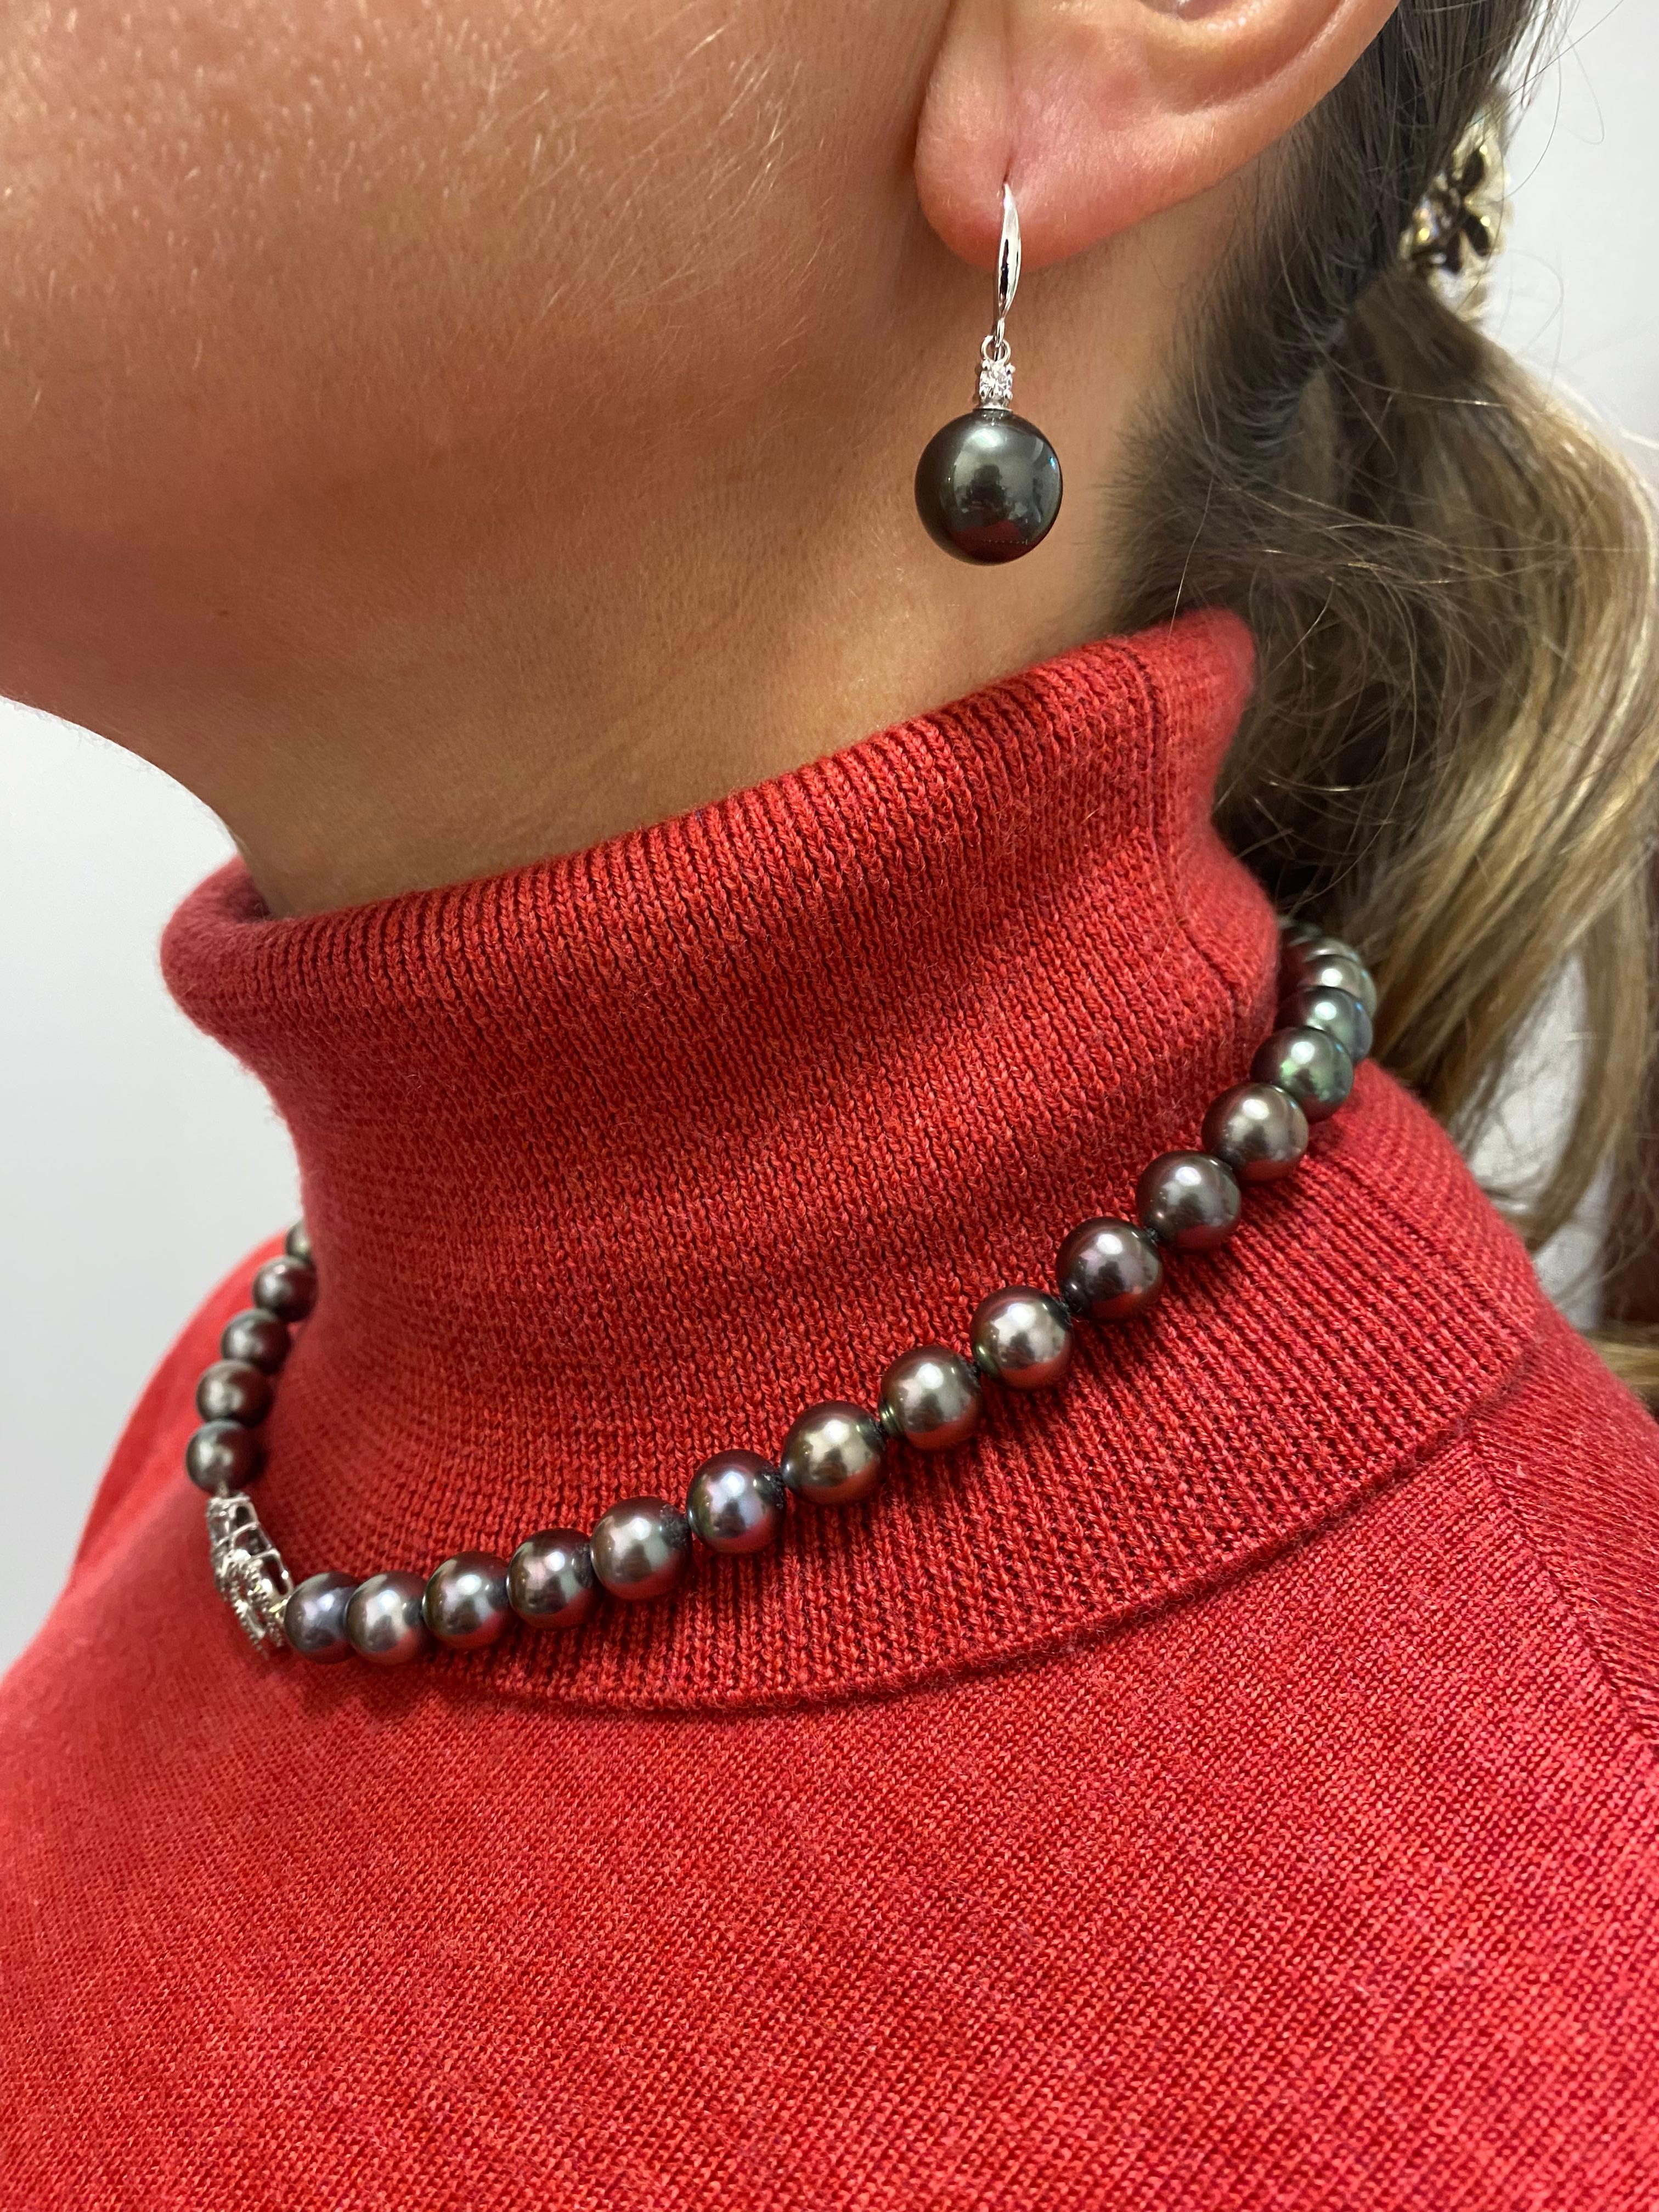 Dieses wunderschöne Schmuckset besteht aus 

Halskette & passende Tropfenohrringe



NECKLET bietet ein selten gesehenes und sehr gesuchtes 

Tahiti-Perlen in königsblauer Pfauenfarbe & 

hervorragender Glanz 

(möglicherweise der wichtigste